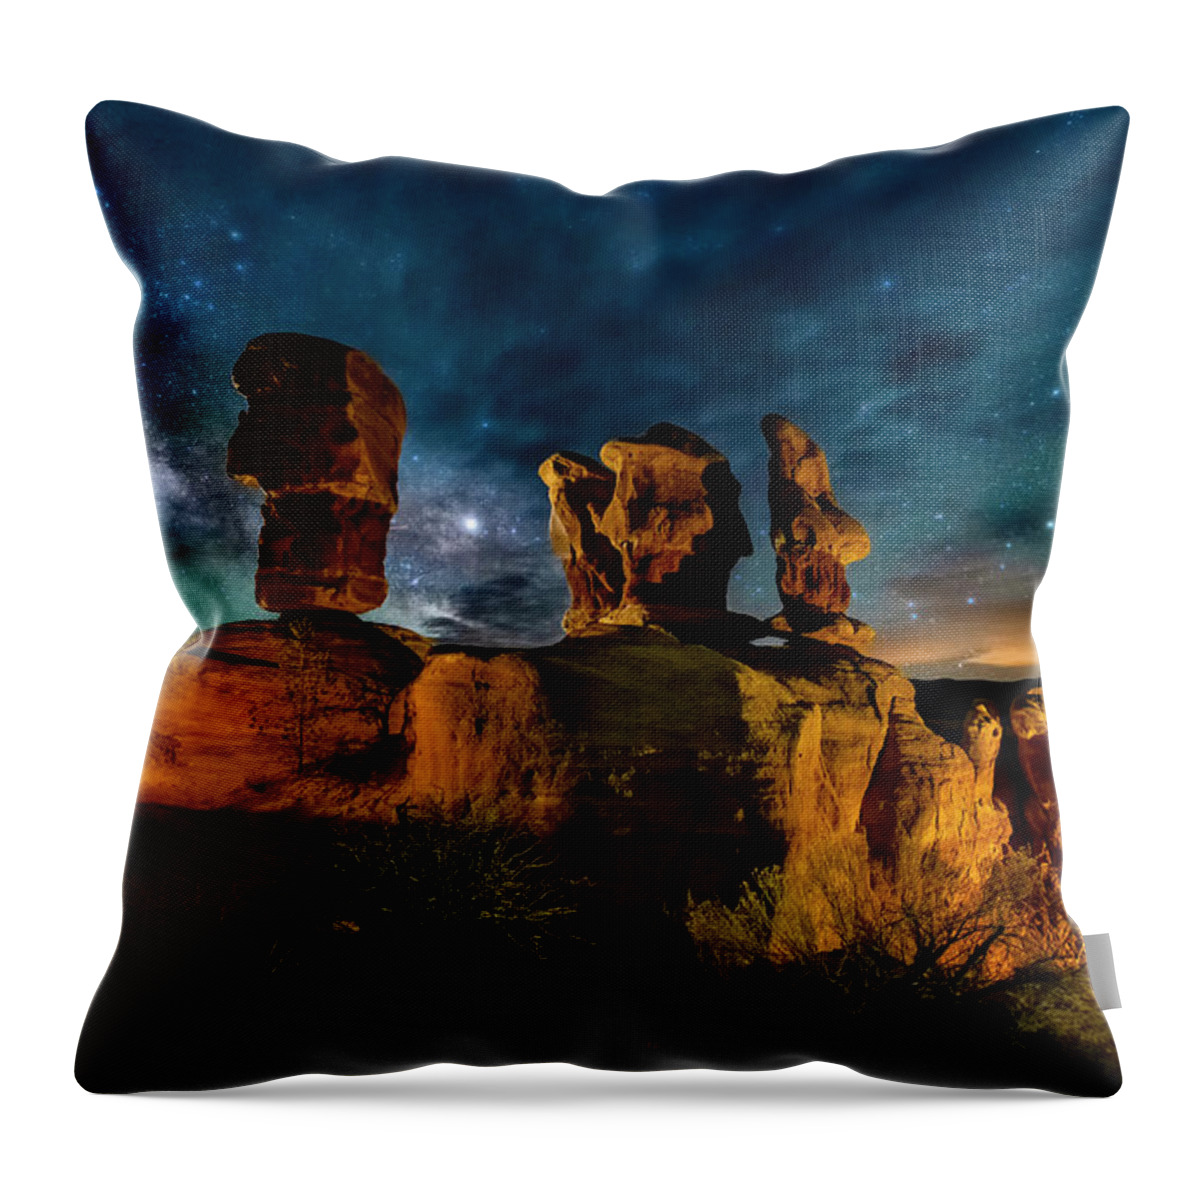 Escalante Utah Throw Pillow featuring the photograph Escalante Milky Way by Michael Ash